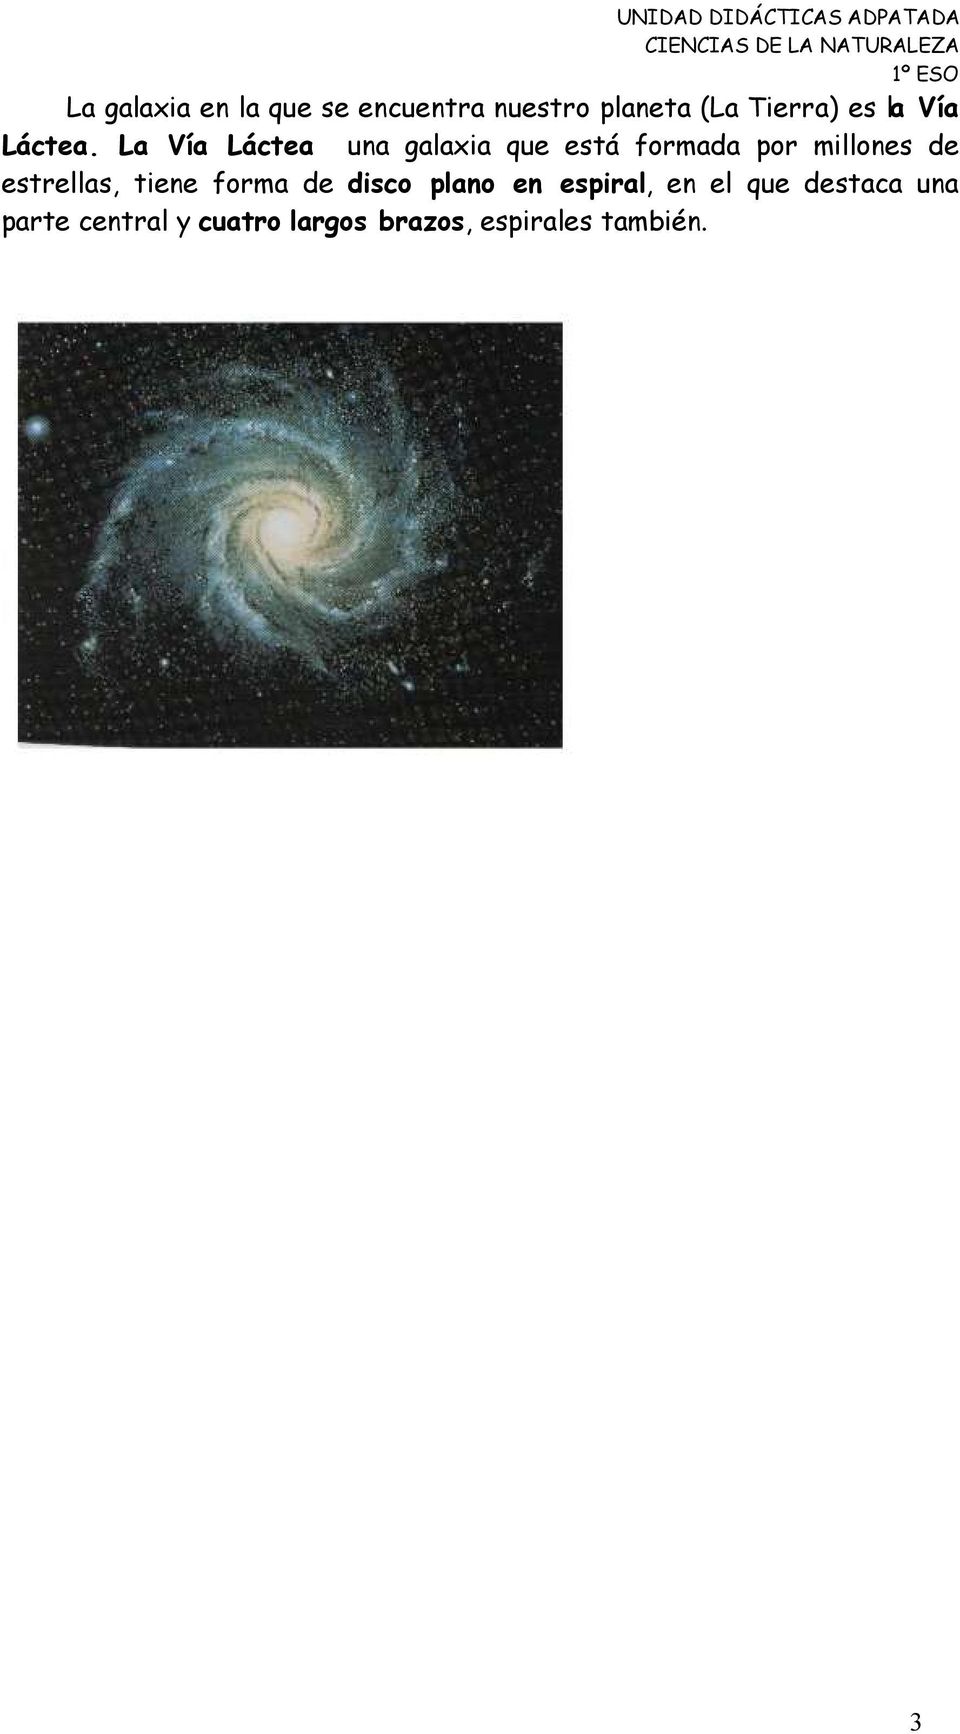 La Vía Láctea una galaxia que está formada por millones de